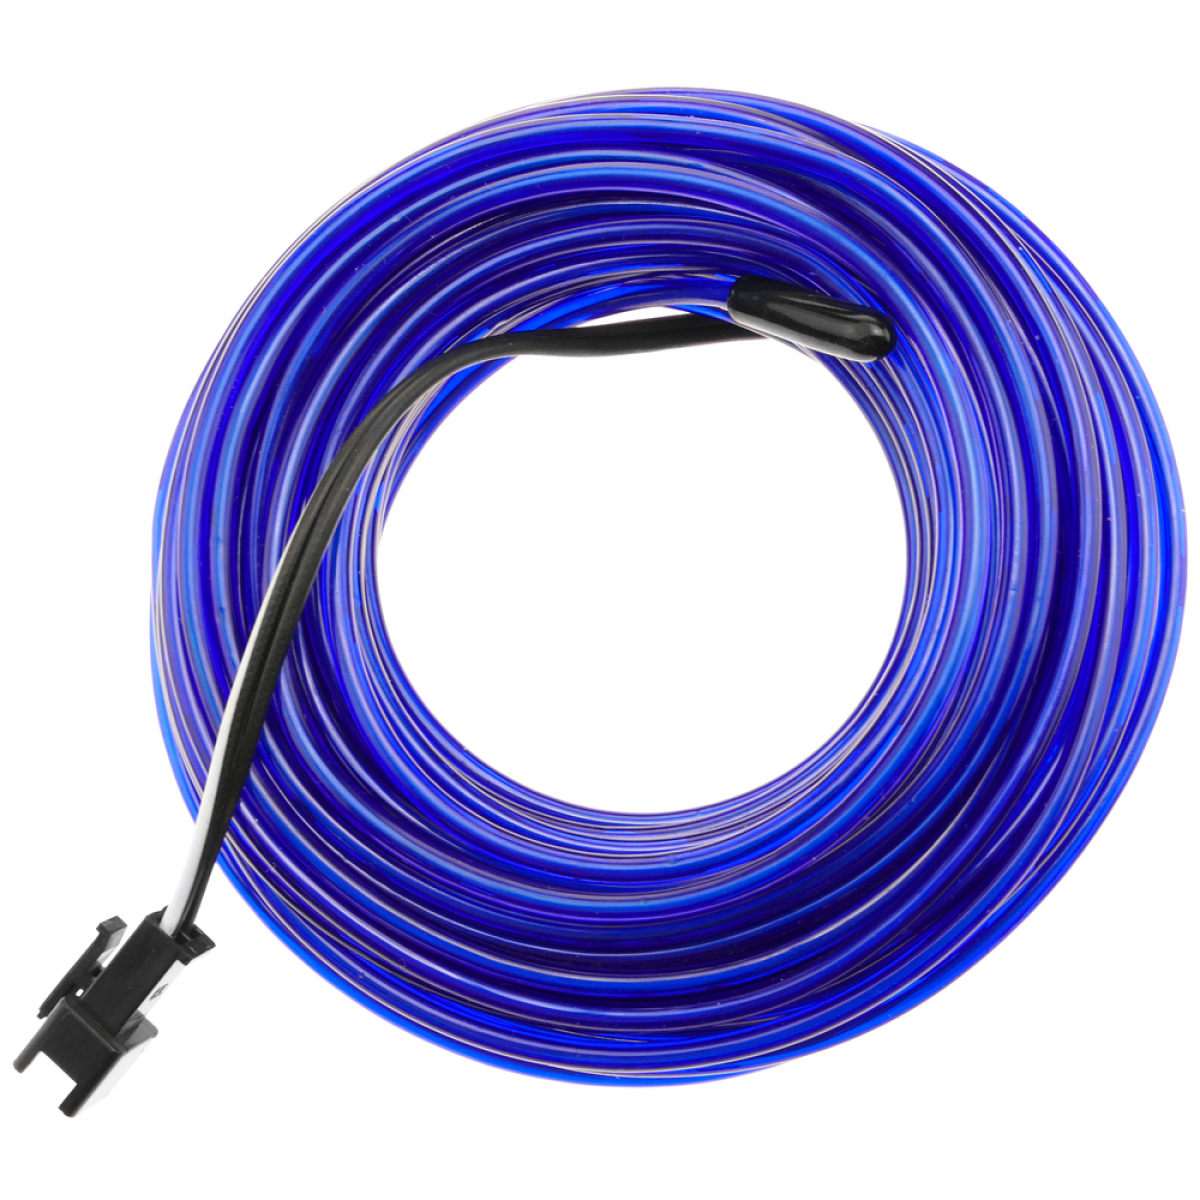 Bematik - Marine électroluminescent bleu bobine de fil 2.3mm 10m connecté à 220VAC - Fils et câbles électriques